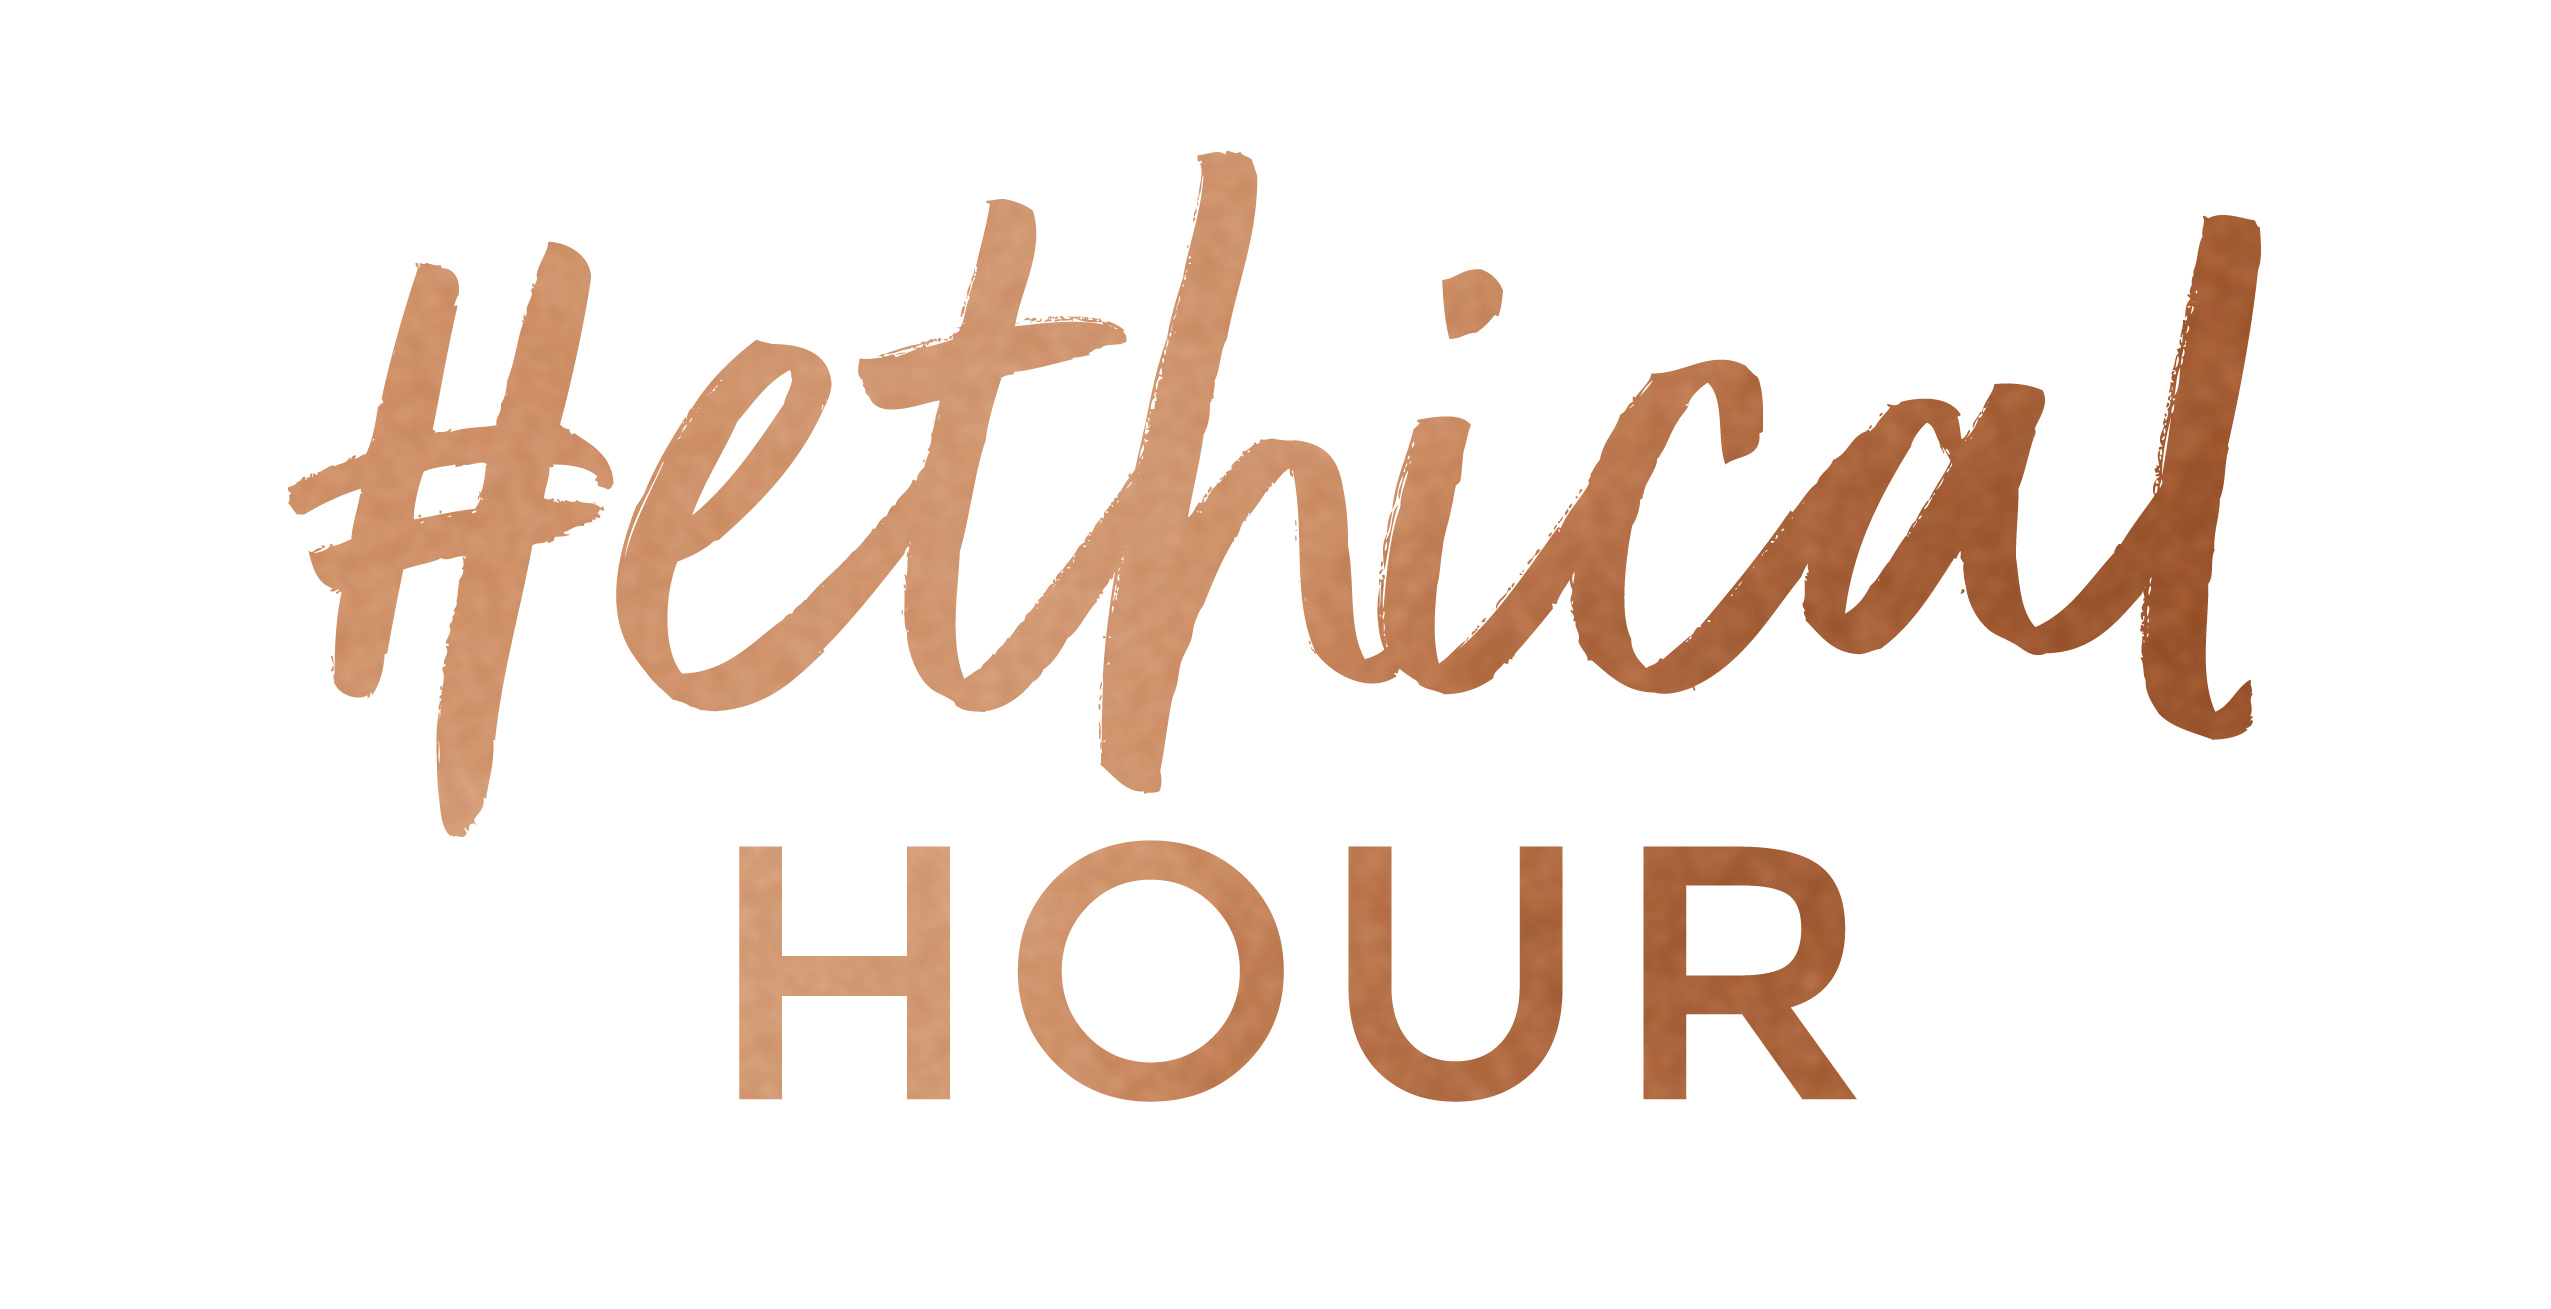 Ethical Hour Ltd